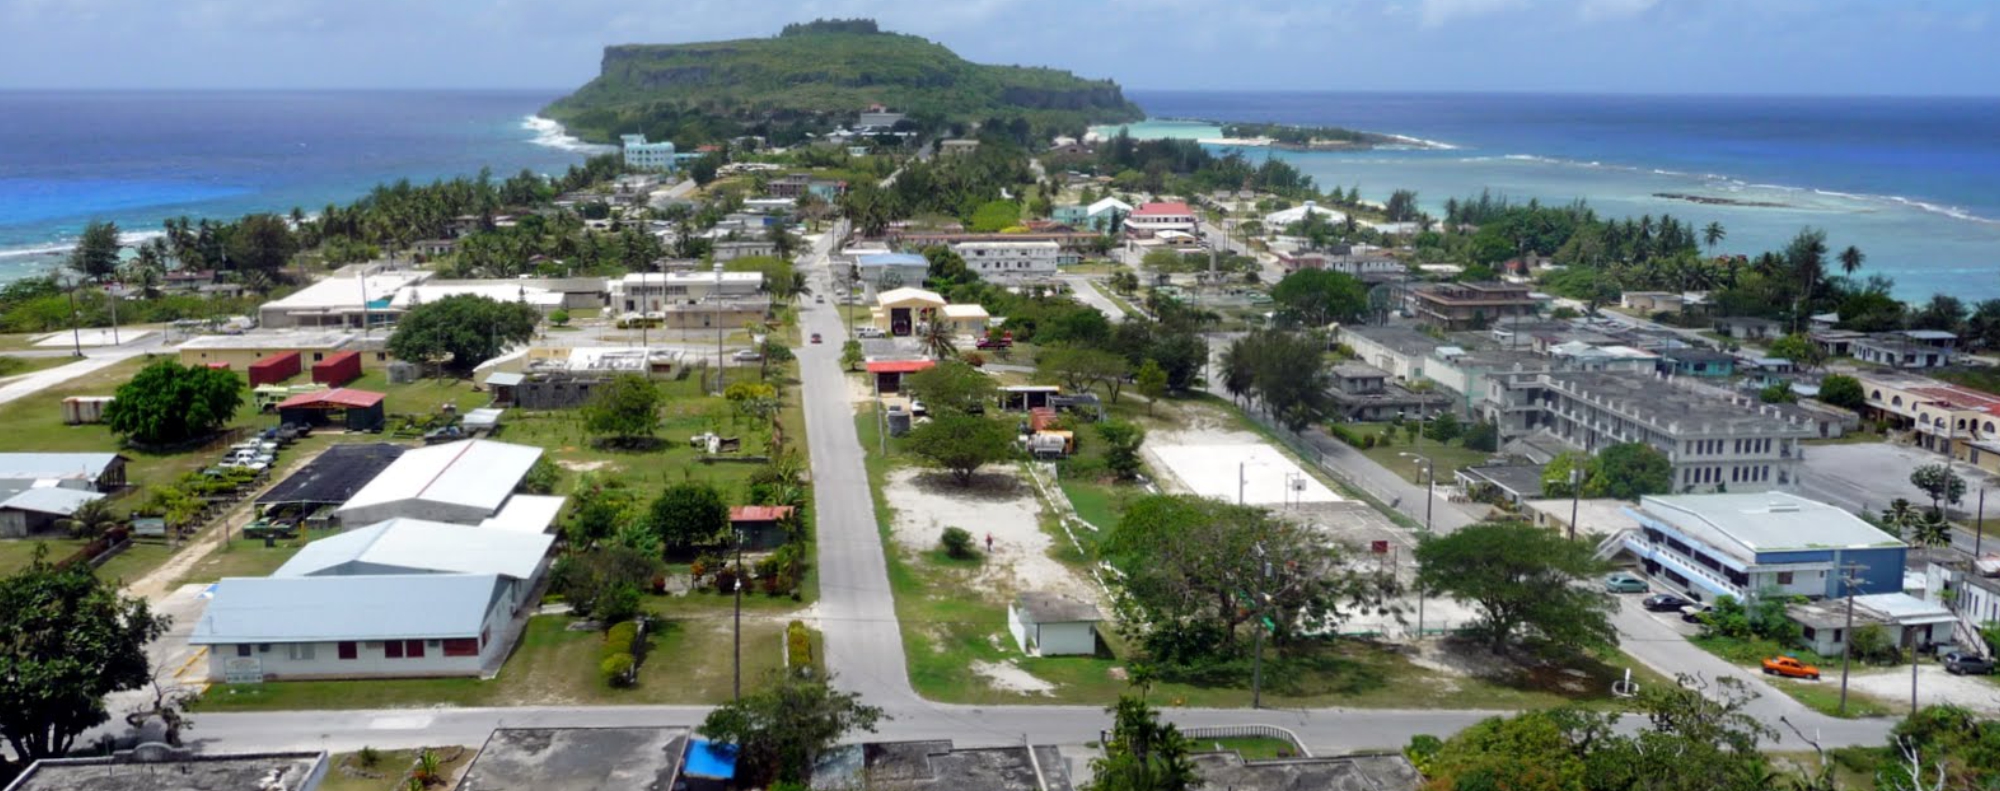 Dịch vụ chuyển phát nhanh đi Micronesia giá rẻ, chuyên nghiệp